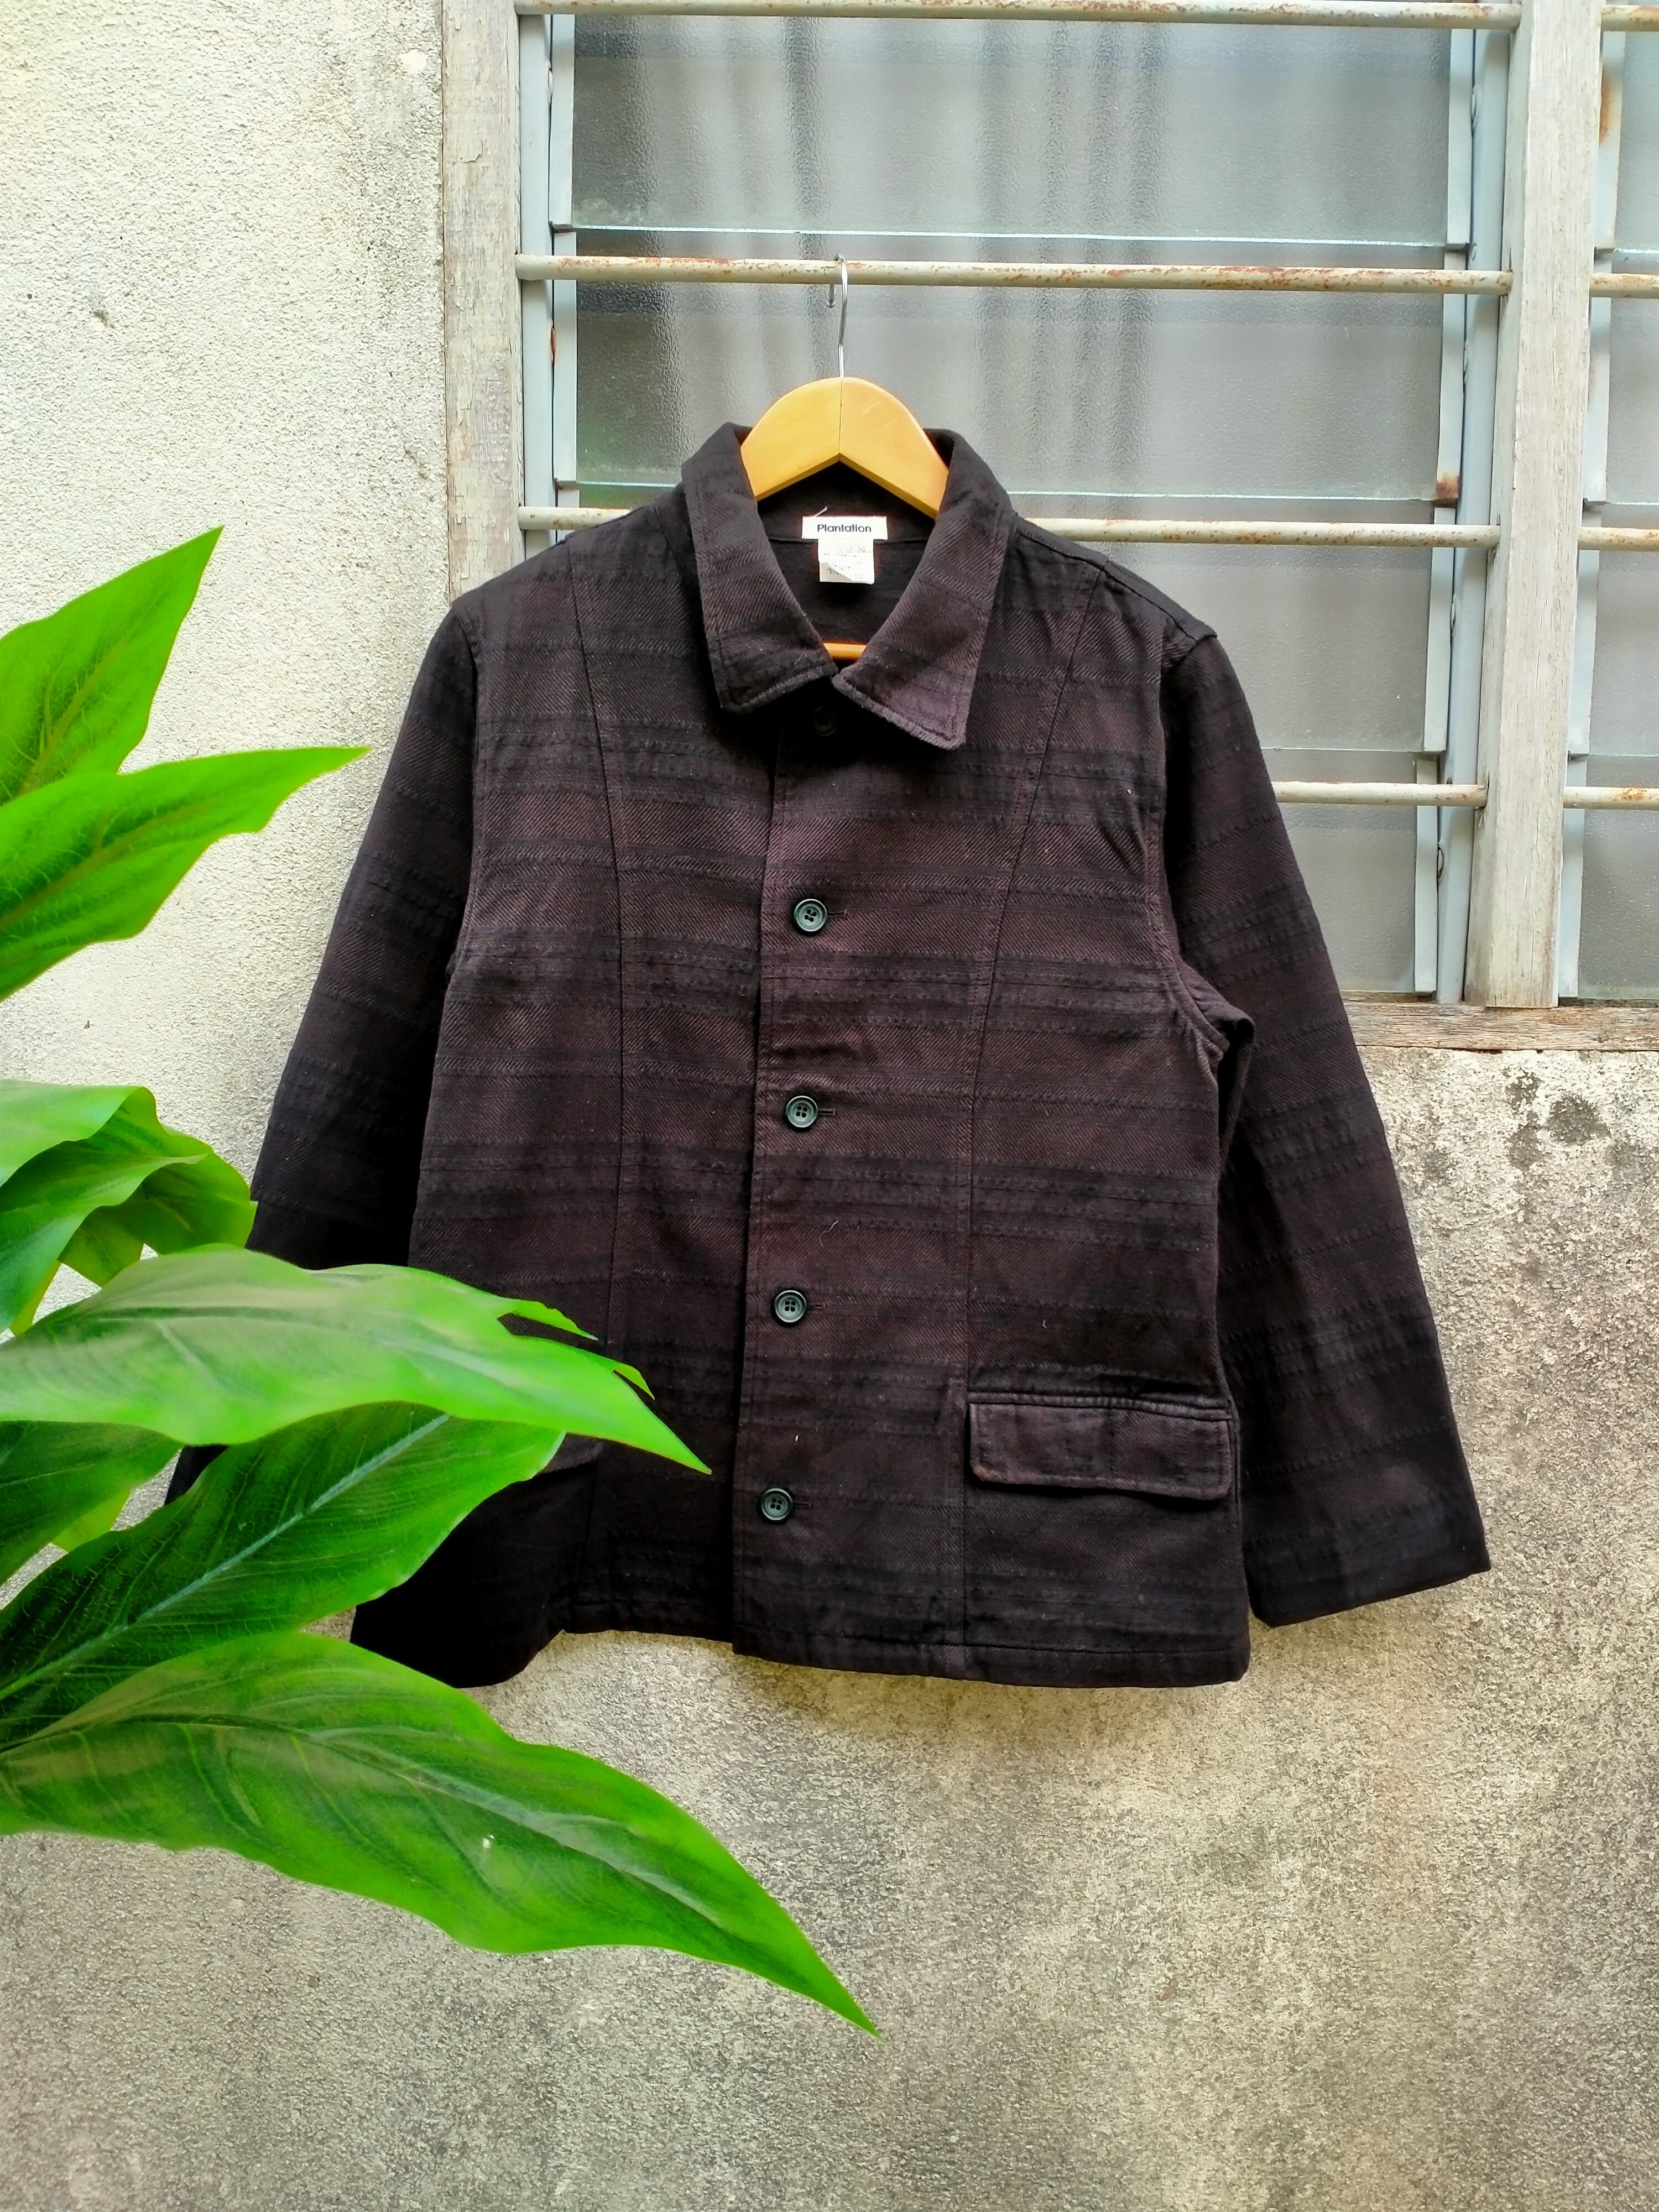 Rare kansai yamamoto jacket - Gem